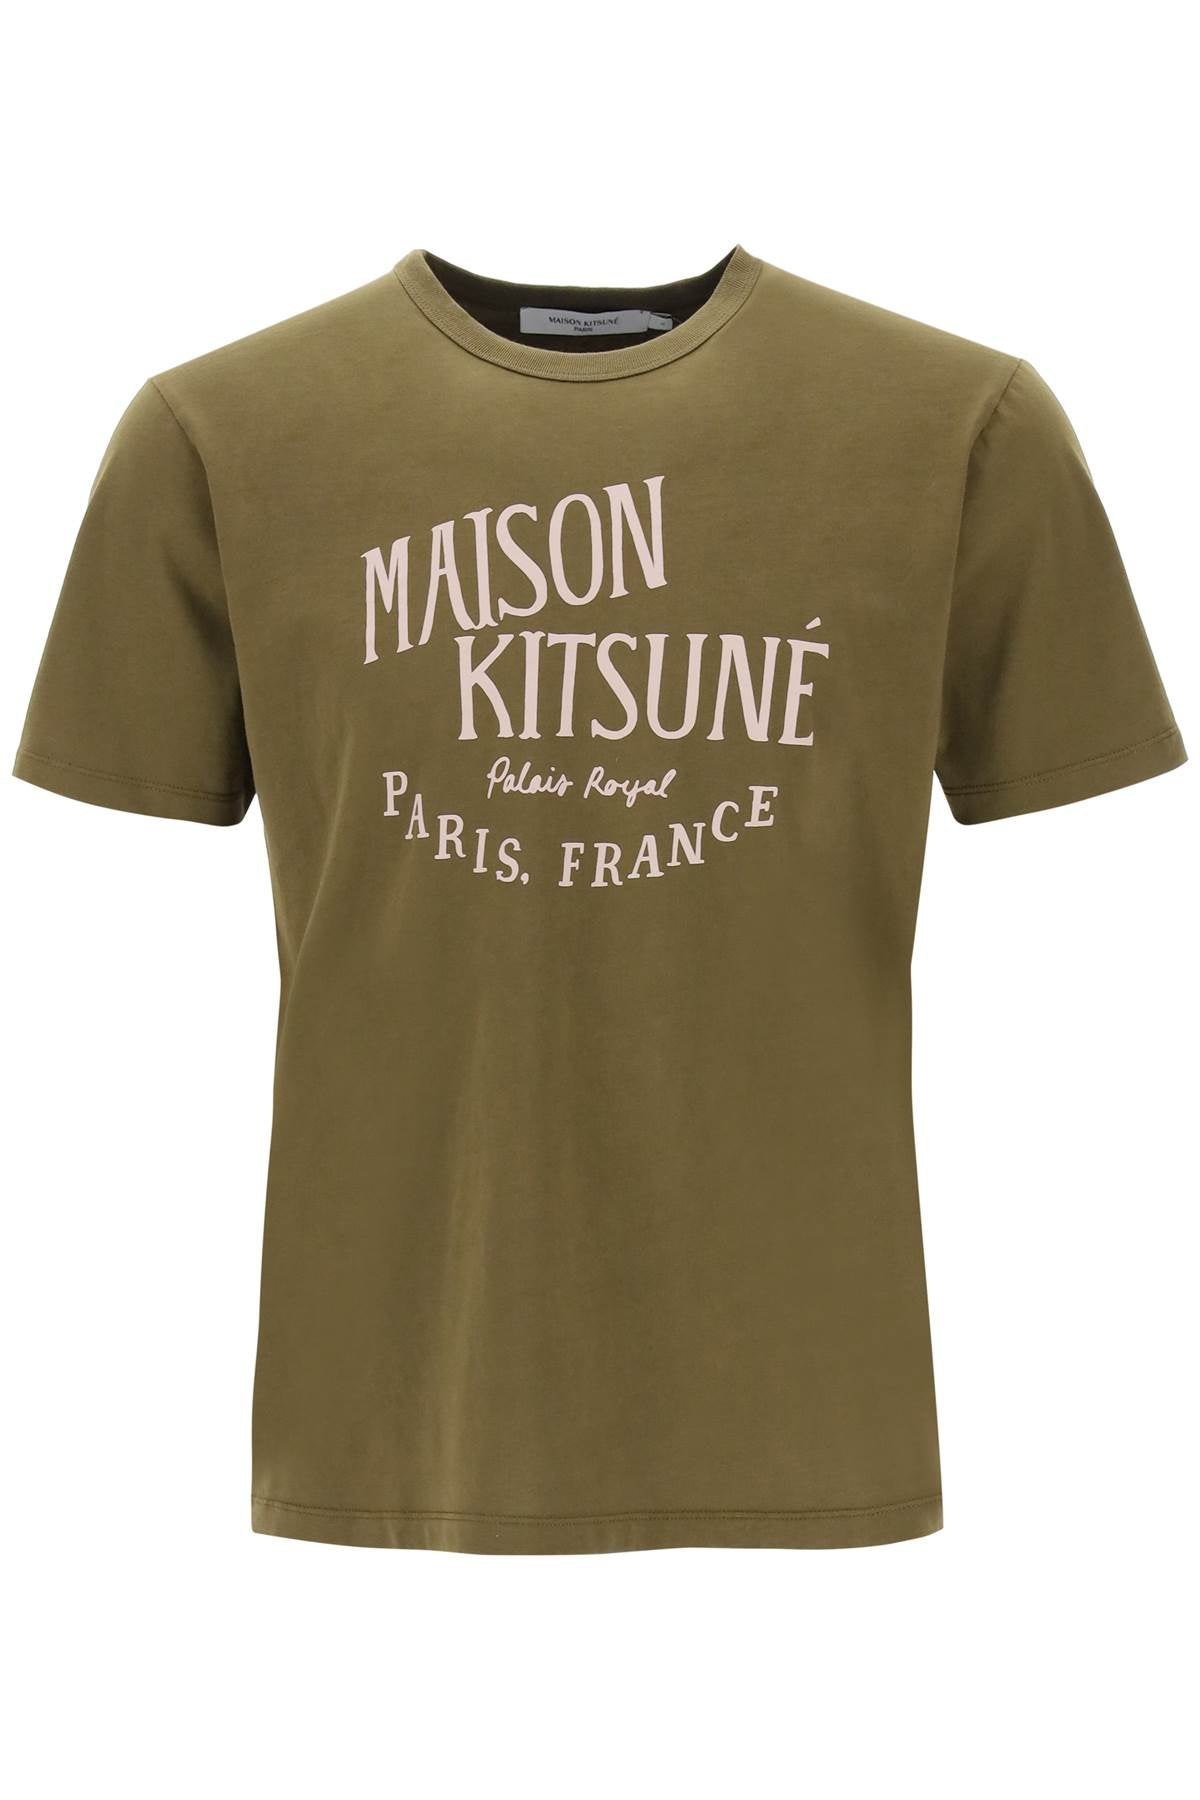 Maison kitsune 'palais royal' print t-shirt-0